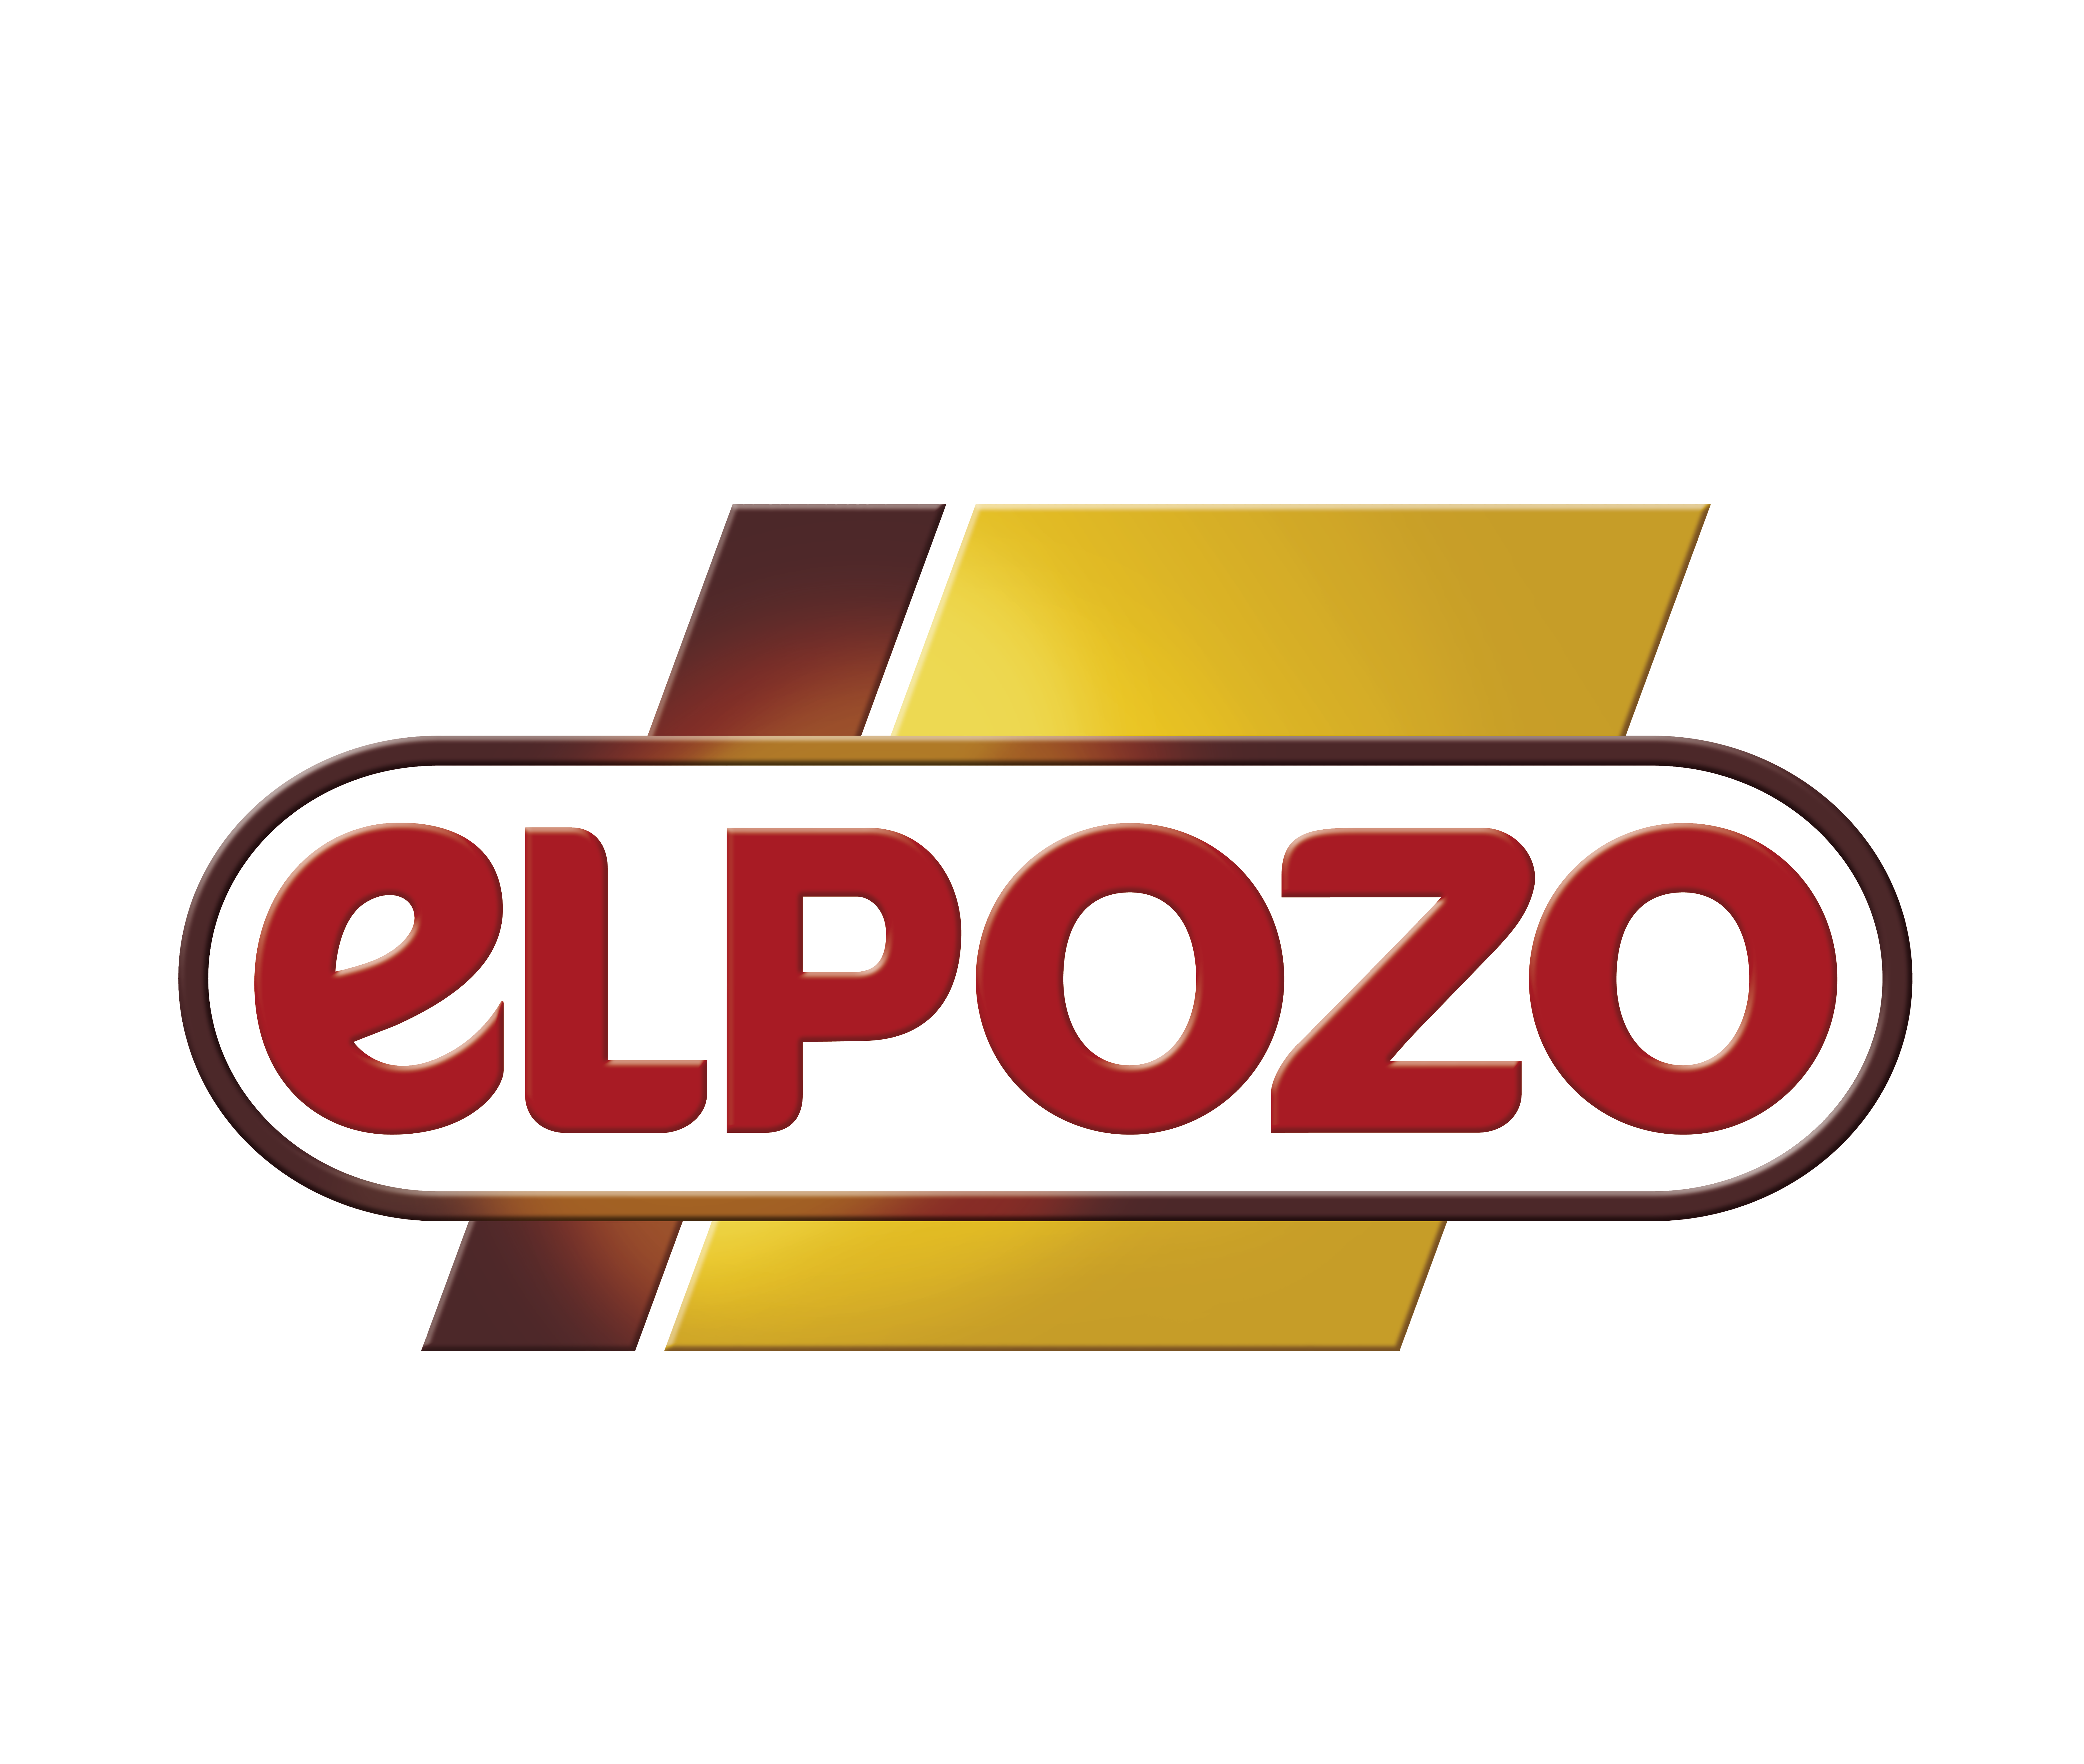 logo-el-pozo